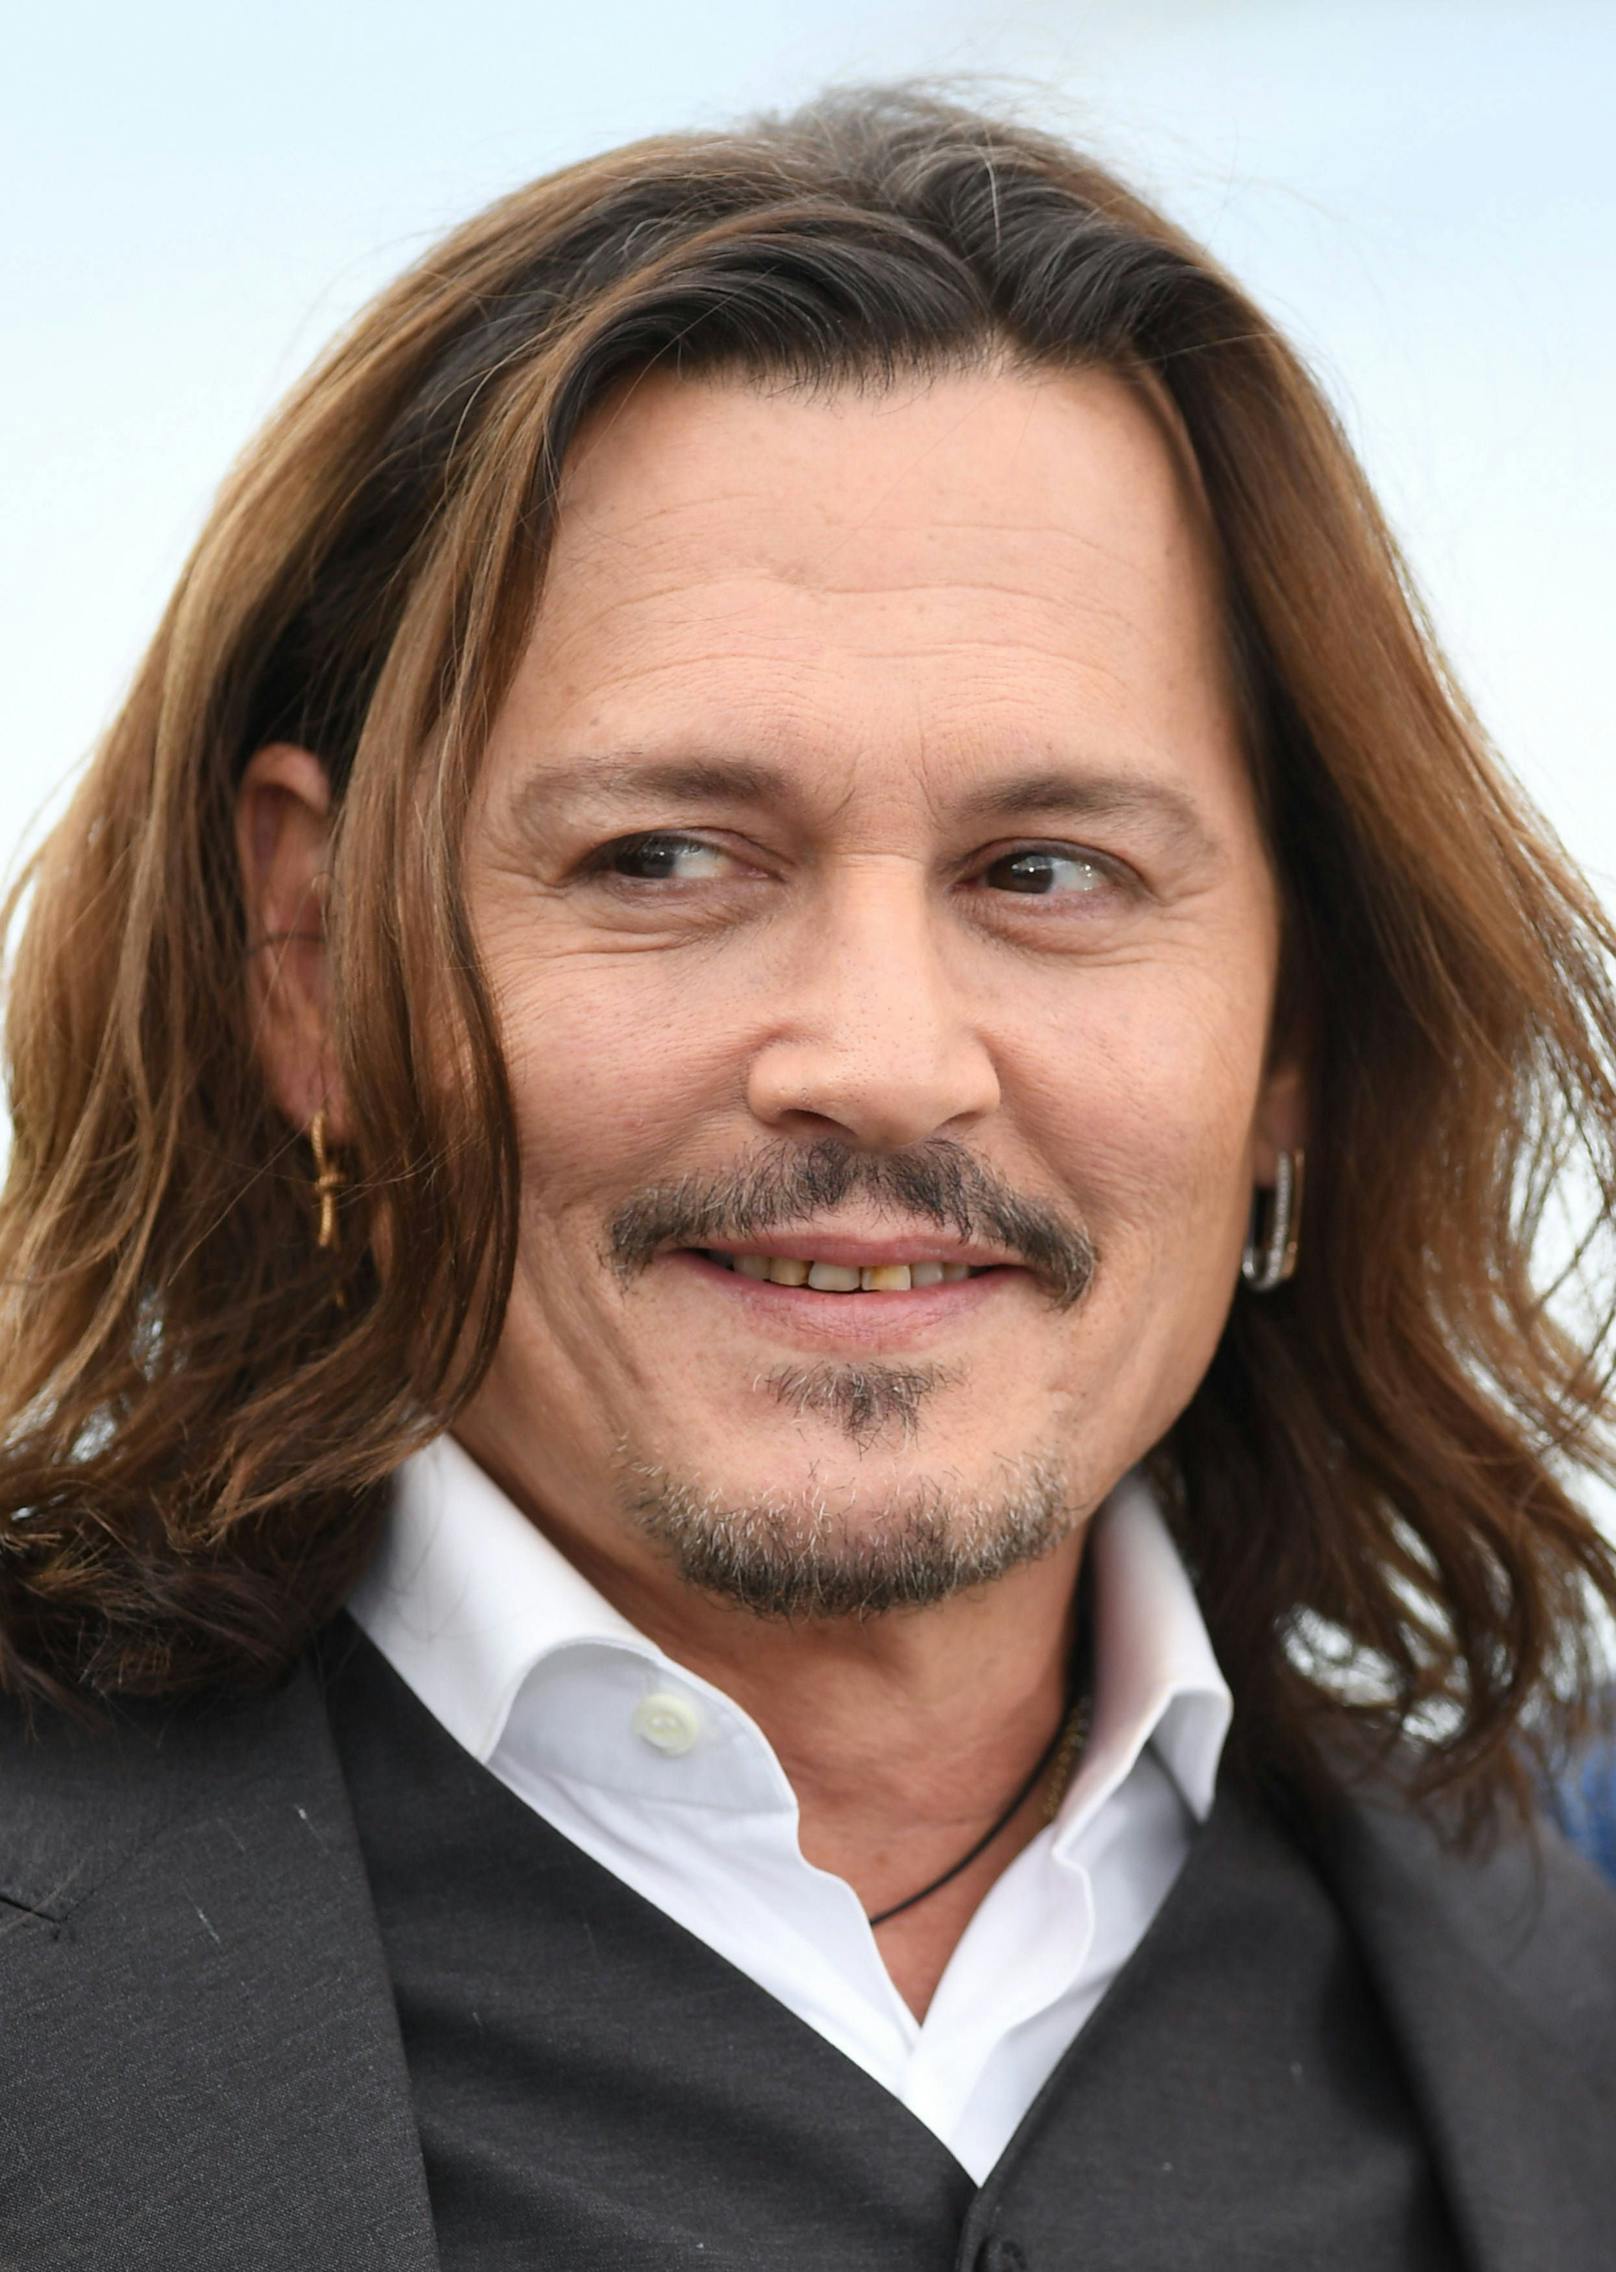 Fans zeigen sich schockiert über die Zähne von Johnny Depp.